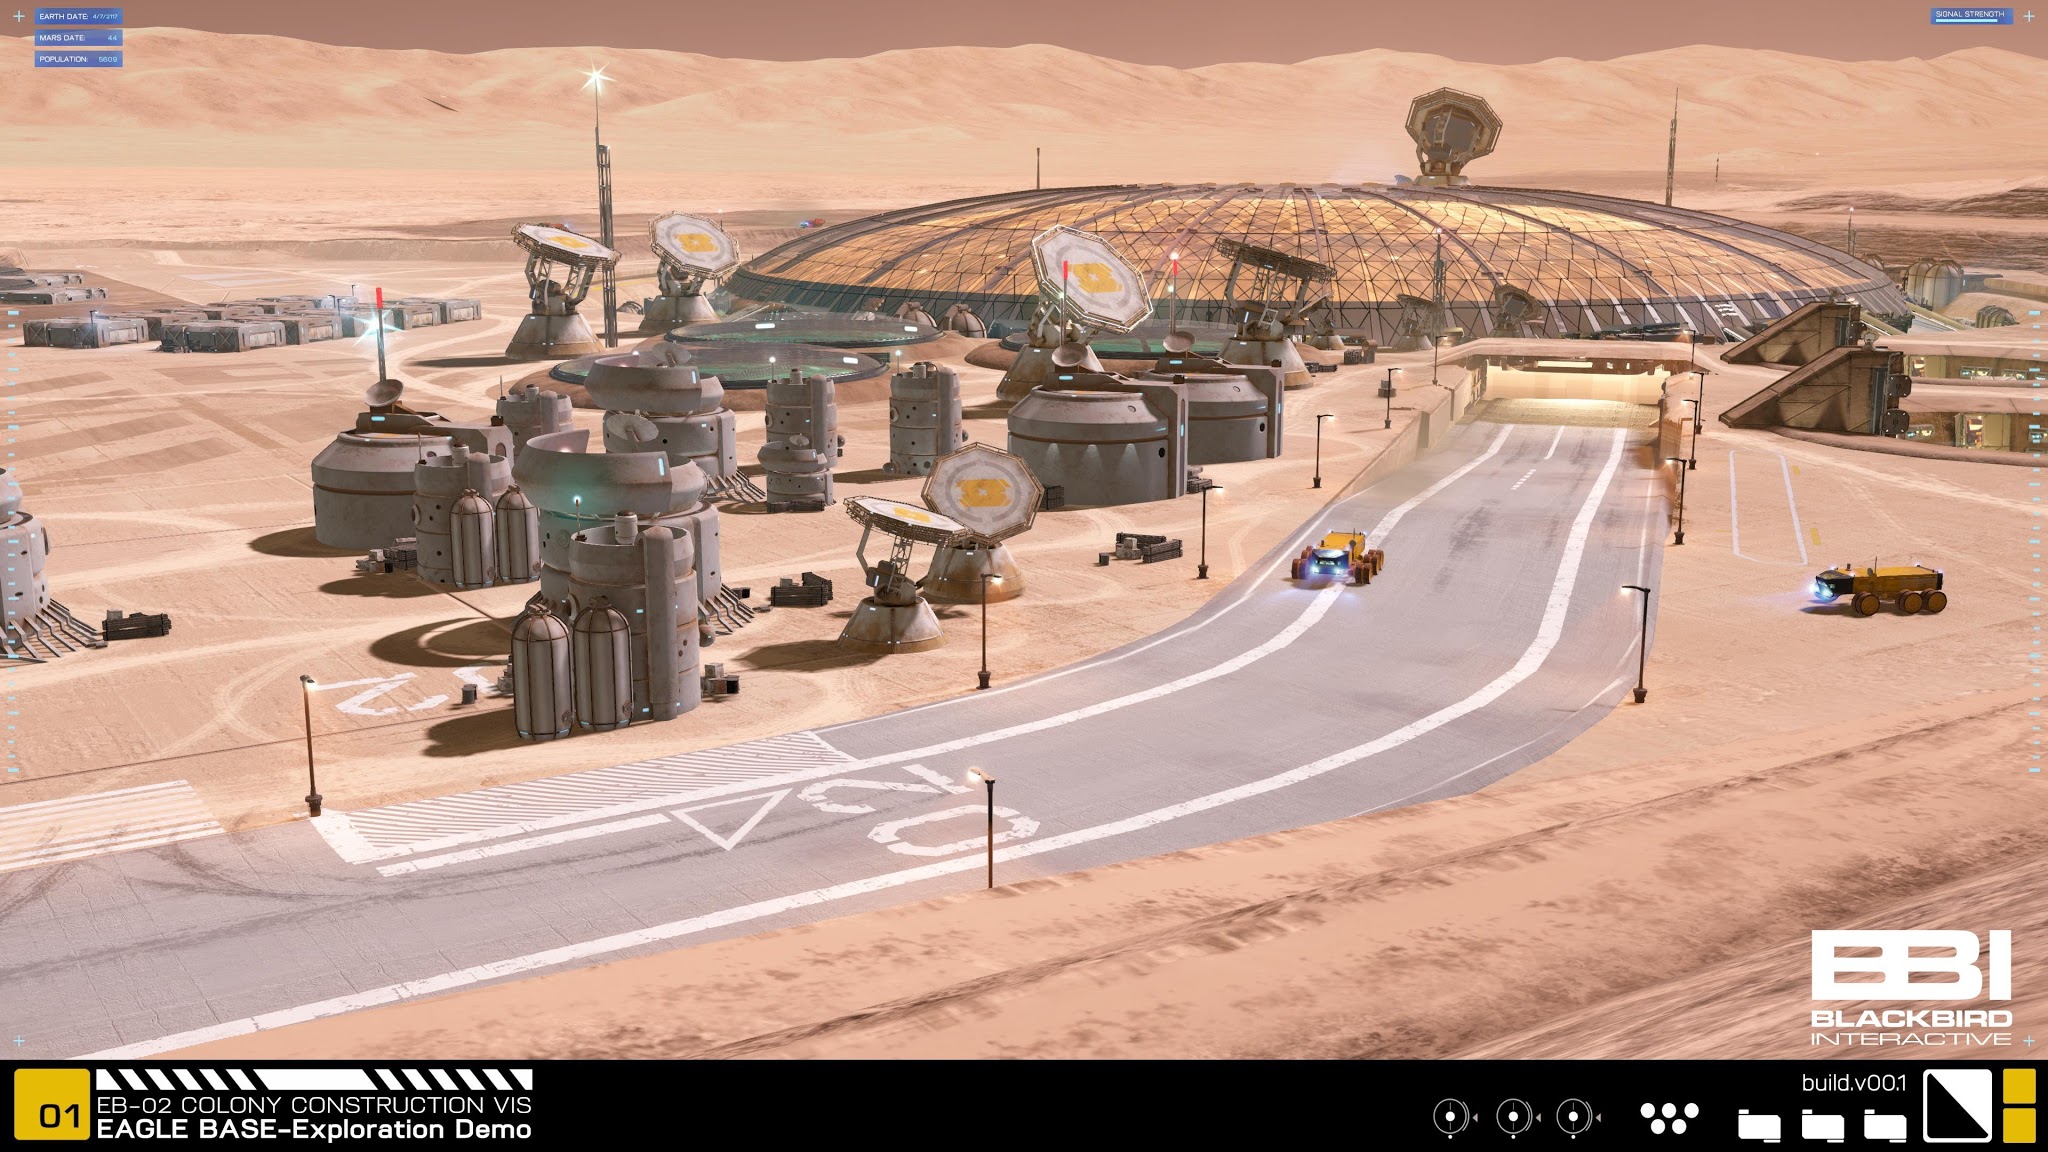 Project Eagle Mars Base By Blackbird Interactive, Nasa - Mars Nasa Base - HD Wallpaper 